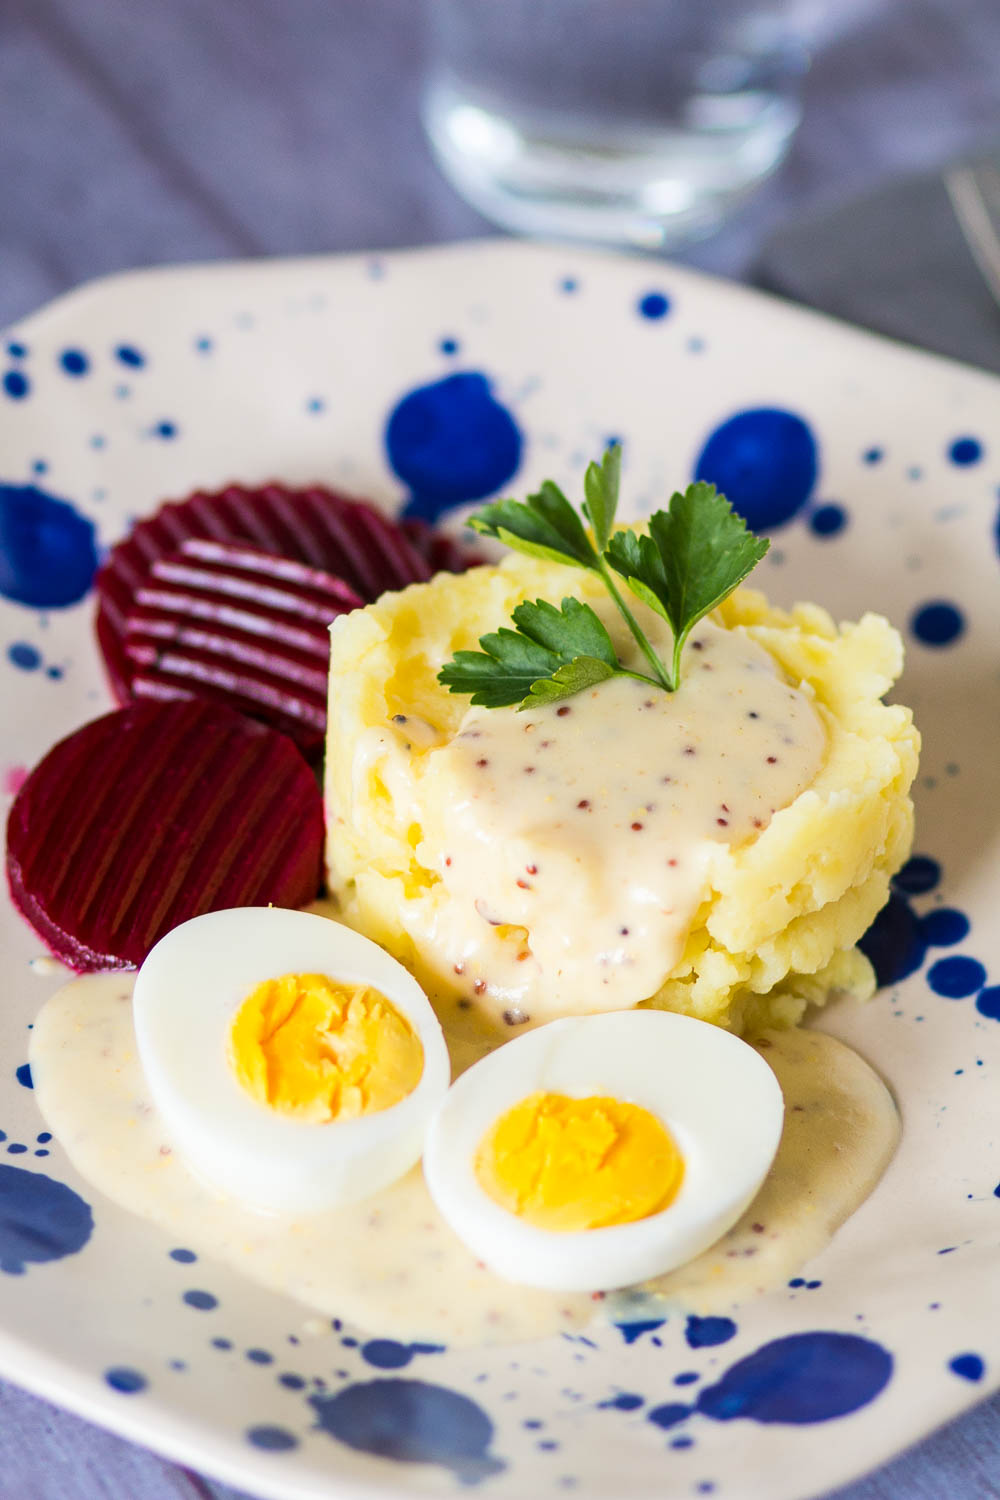 Leckere Senfeier mit körniger Senfsoße und Kartoffelpüree - Eier in Senfsoße